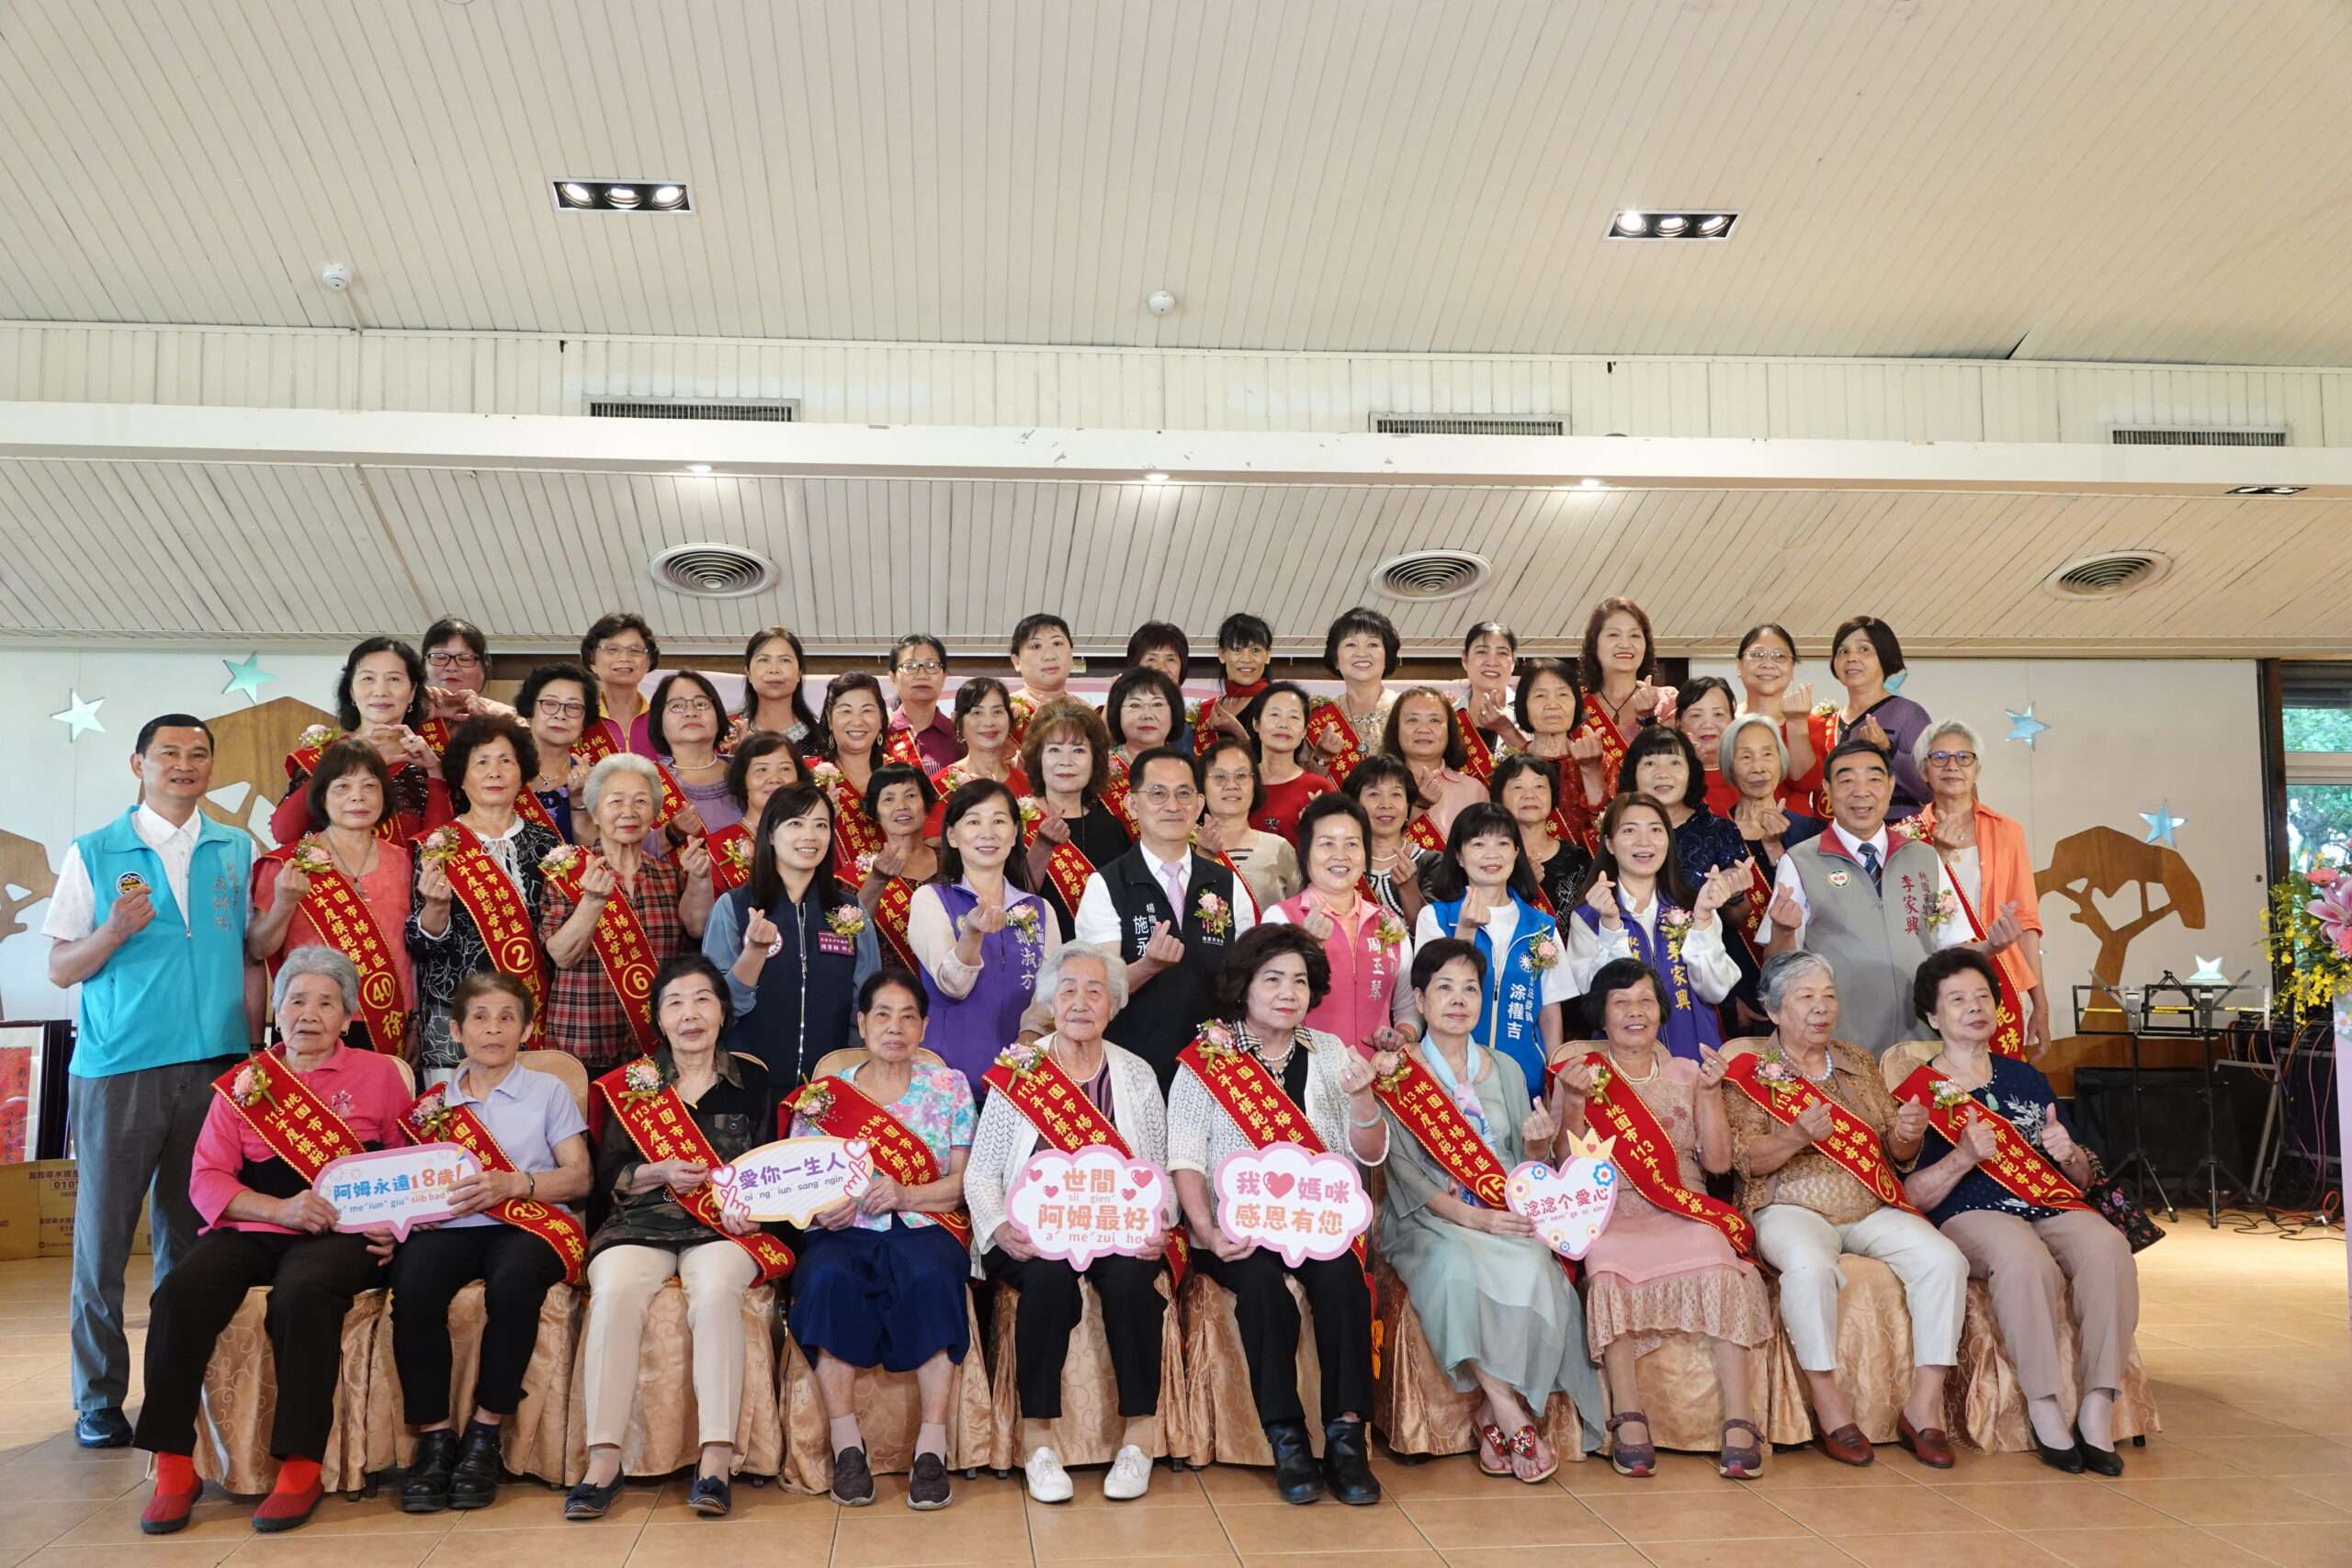 感謝母愛無私奉獻 楊梅區公所表揚44模範母親